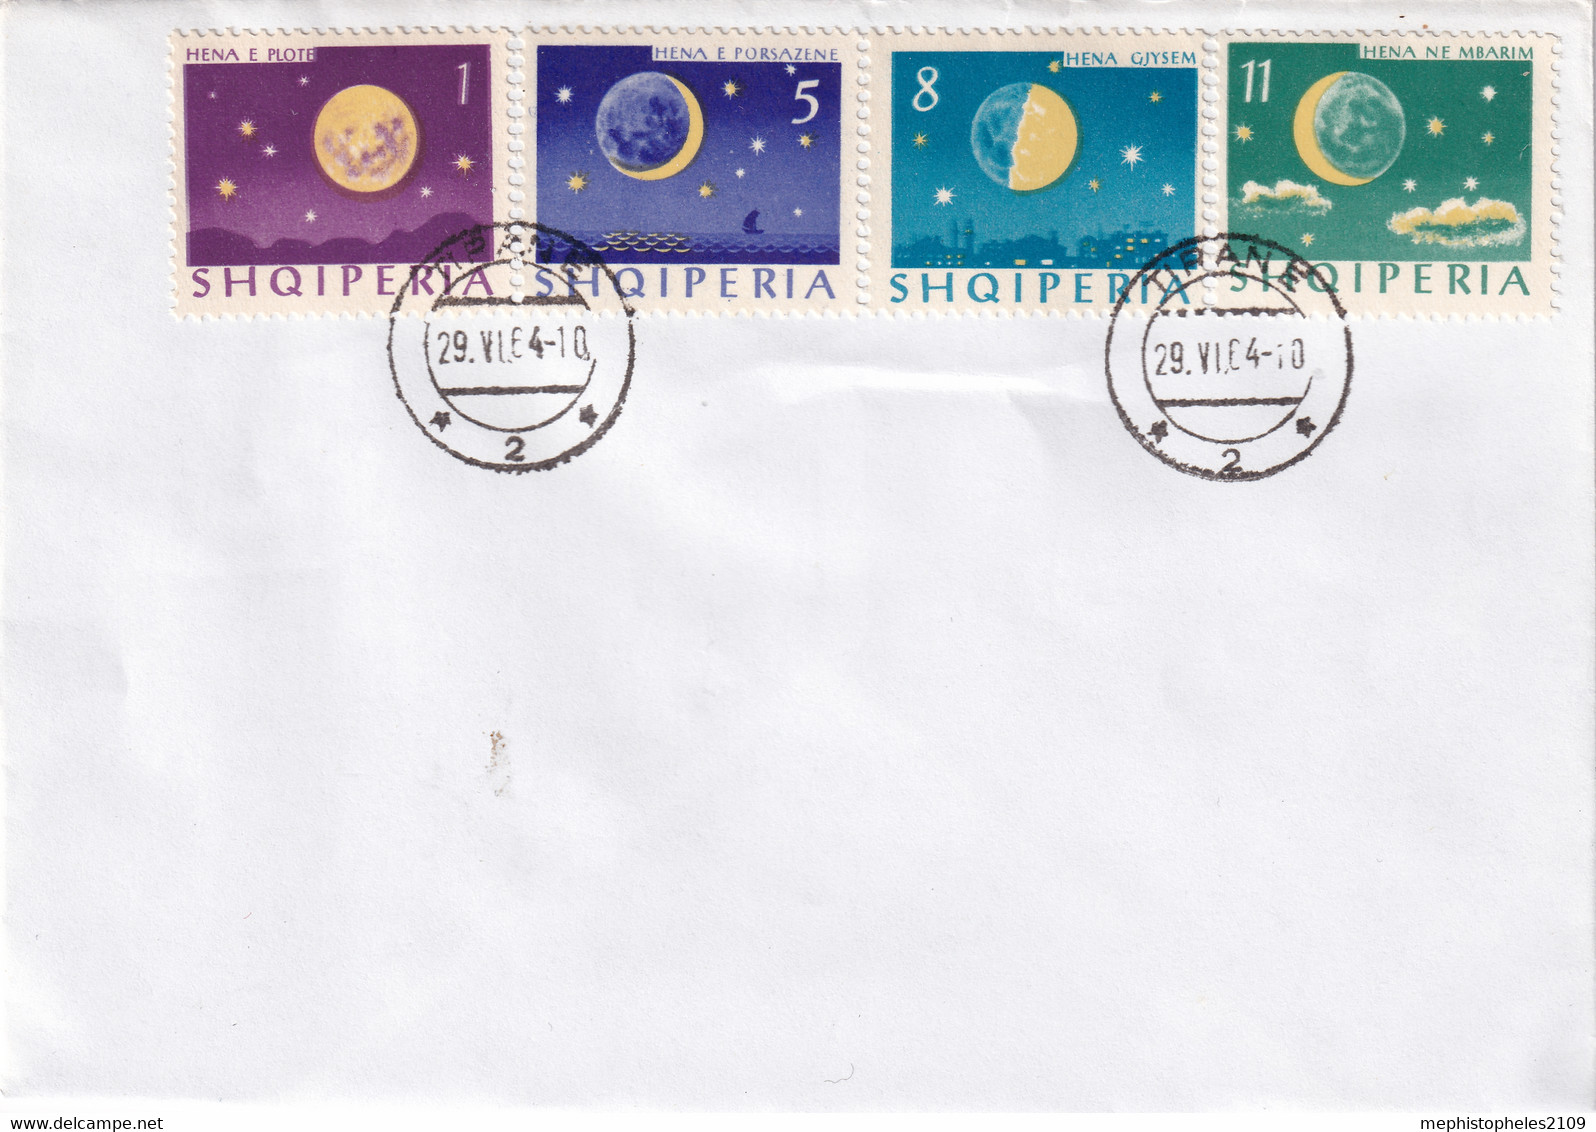 ALBANIA 1964 - Tirana Cancel (FDC) - Mi 839-842 - On Enveloppe - Moon Phases - Albania